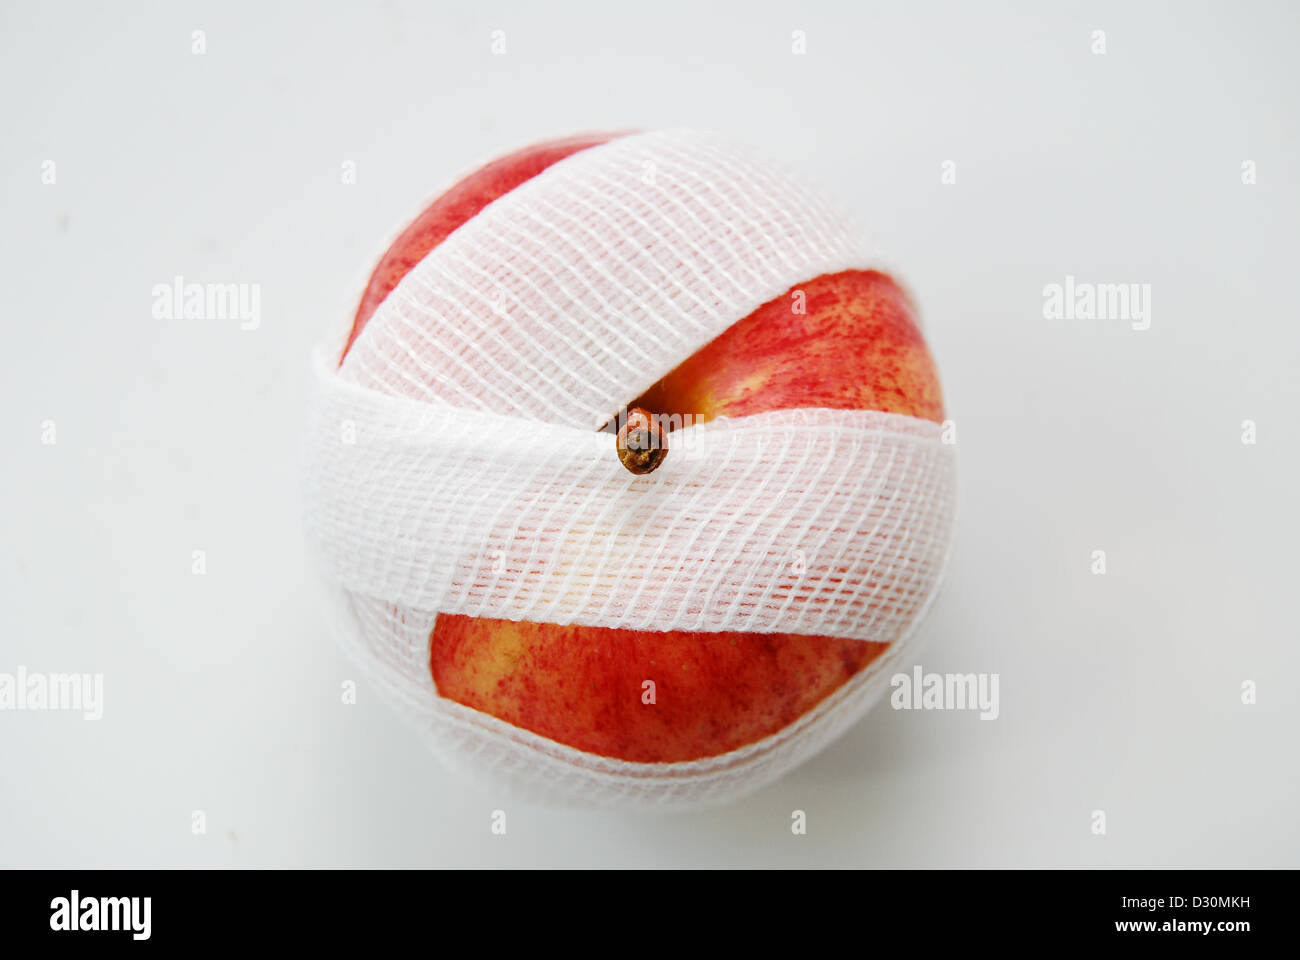 Ein roter und gelber Apfel auf einem weißen Hintergrund, eingehüllt in eine weiße Mullbinde mit einen oben genannten oder Vogelperspektive auf die Frucht. Stockfoto